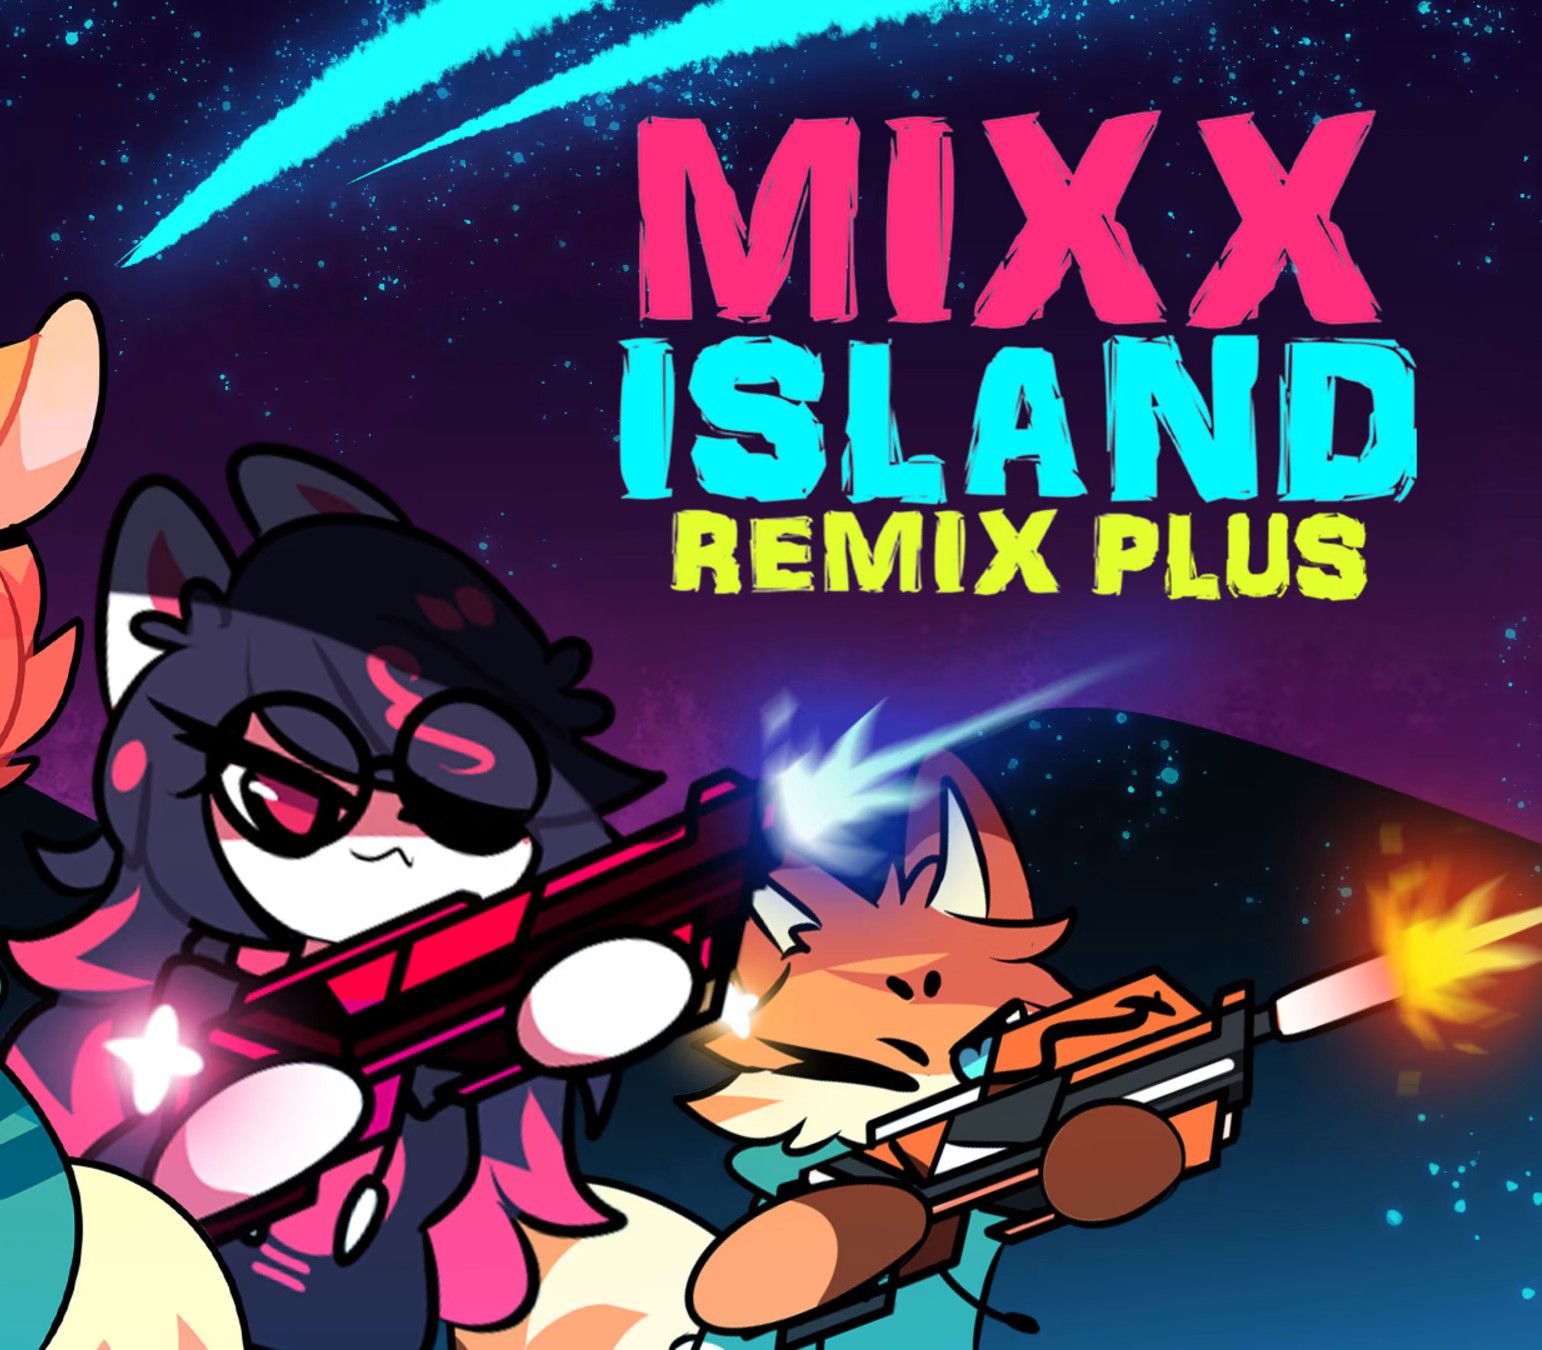 Mixx Island Remix Plus EU Nintendo Switch CD Key